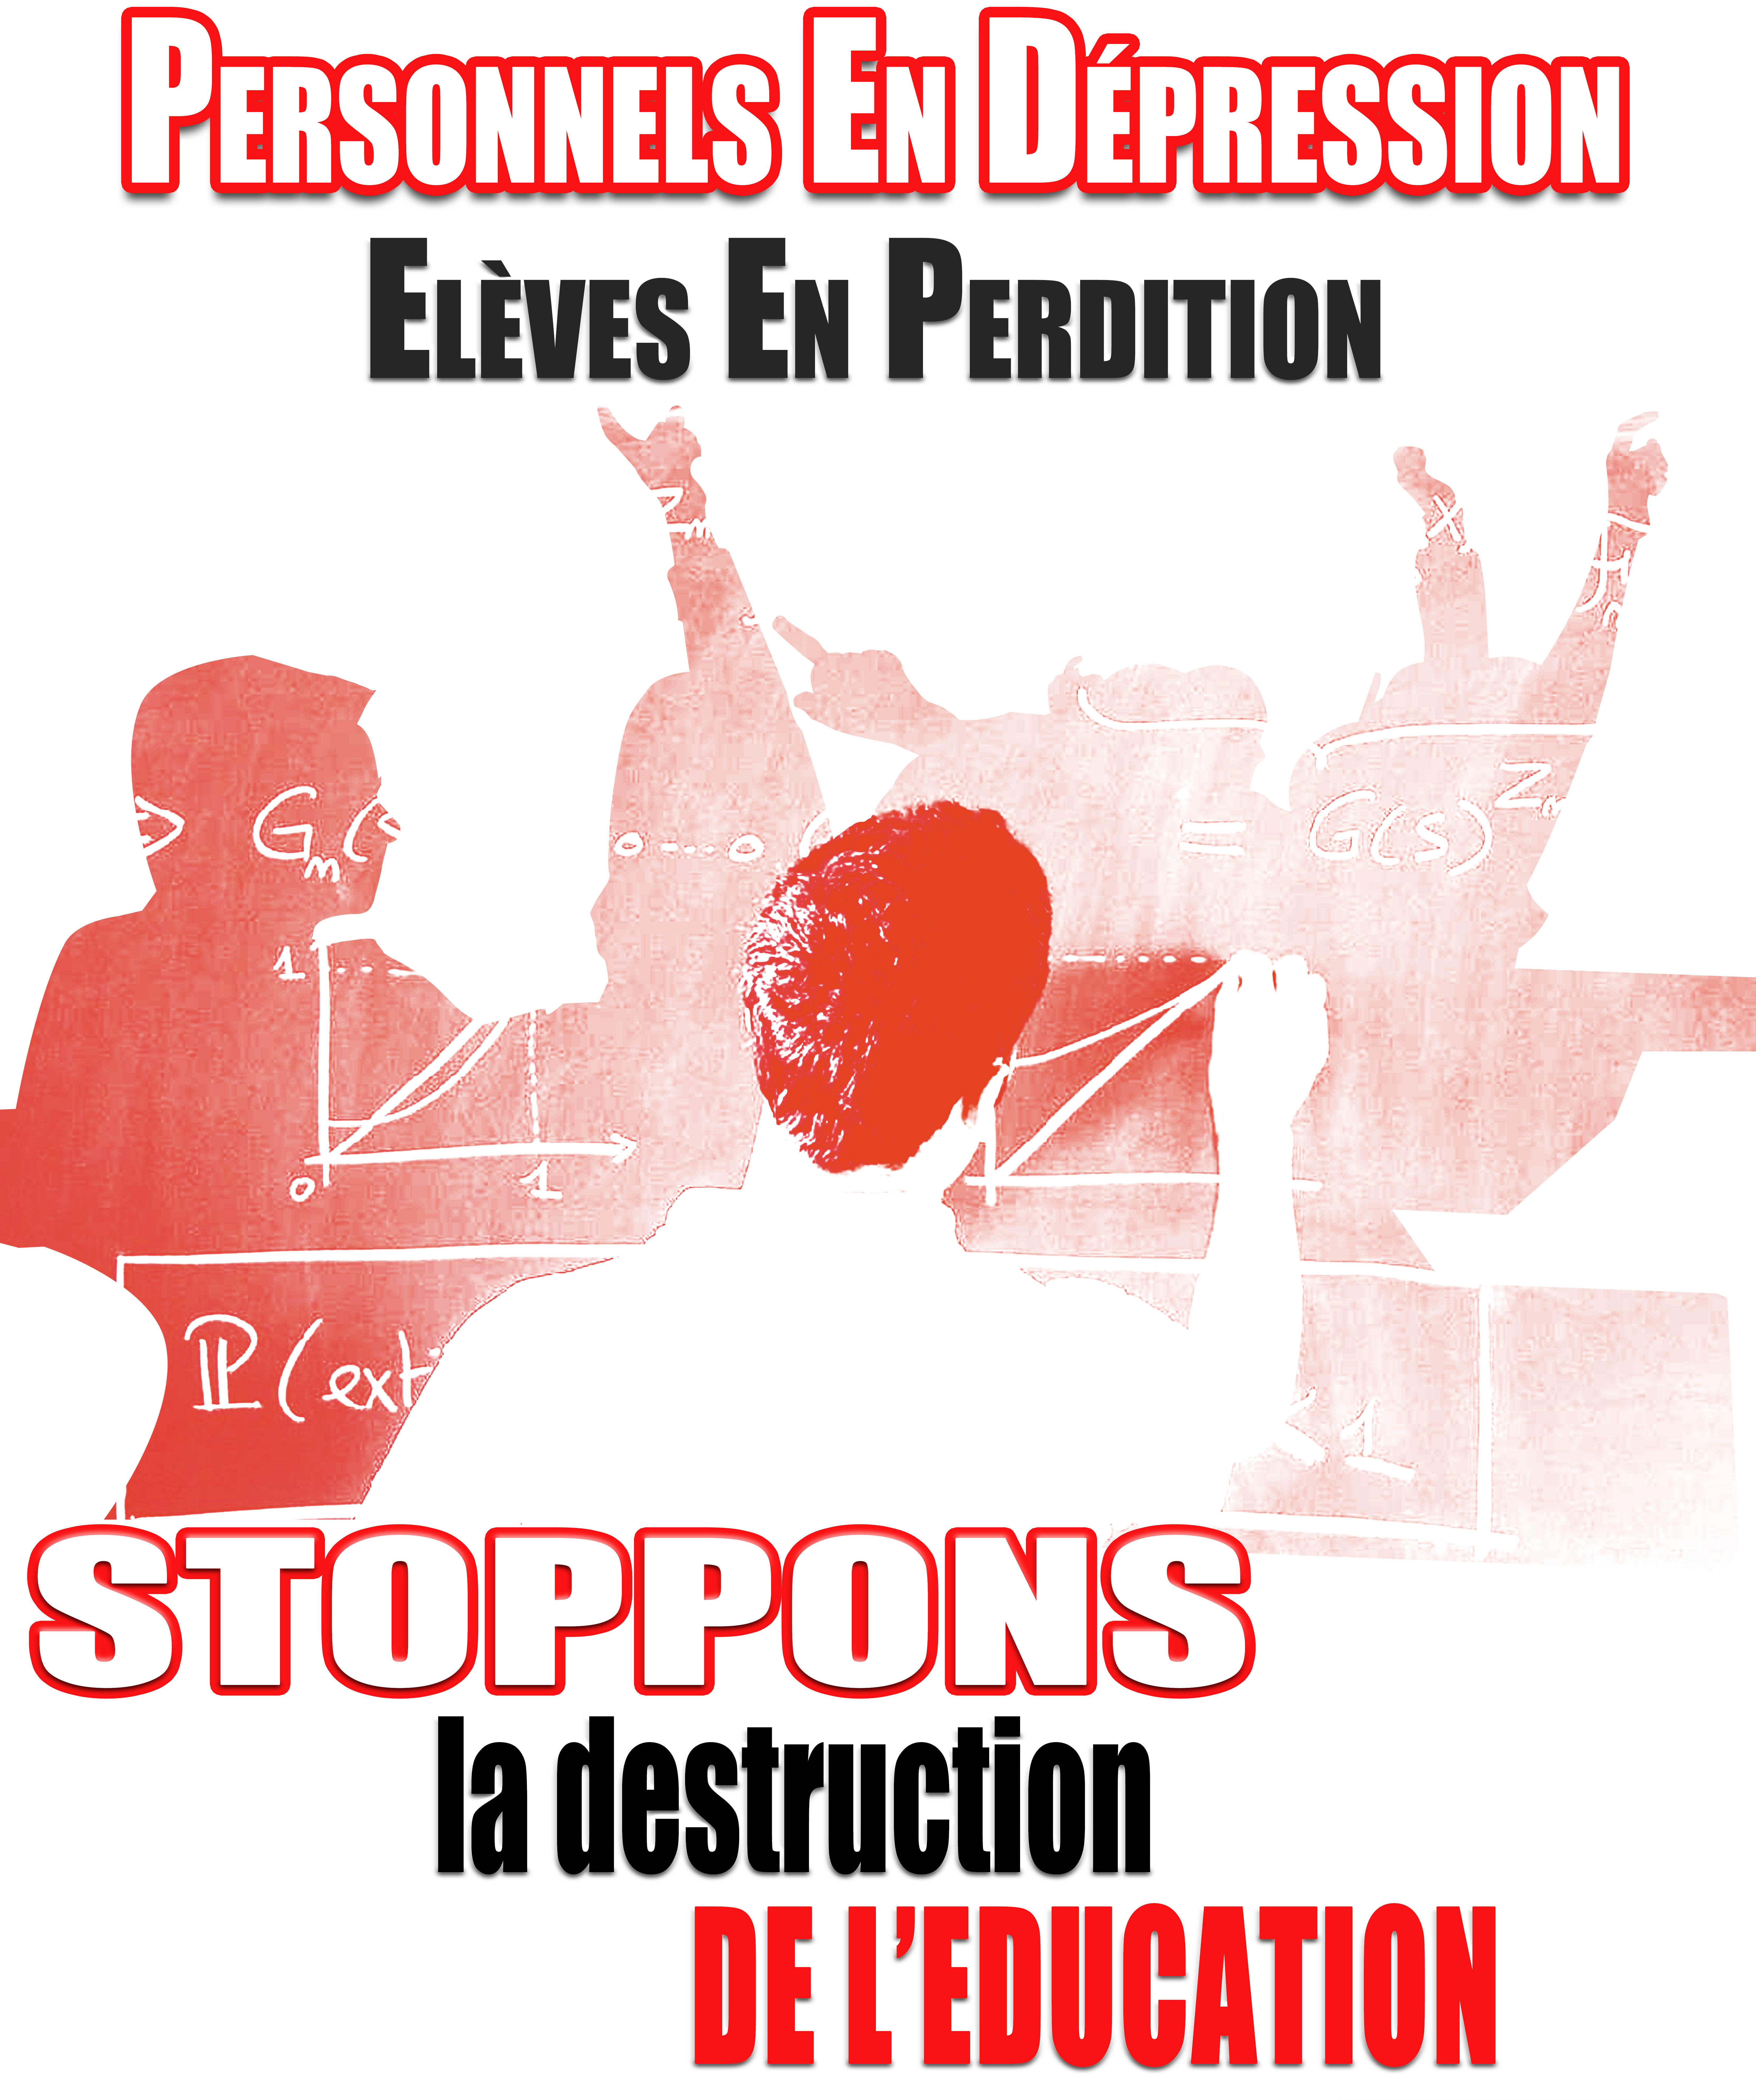 Philosophie au Lycée : les Professeurs donnent 3/20 à la réforme Blanquer et exigent son annulation